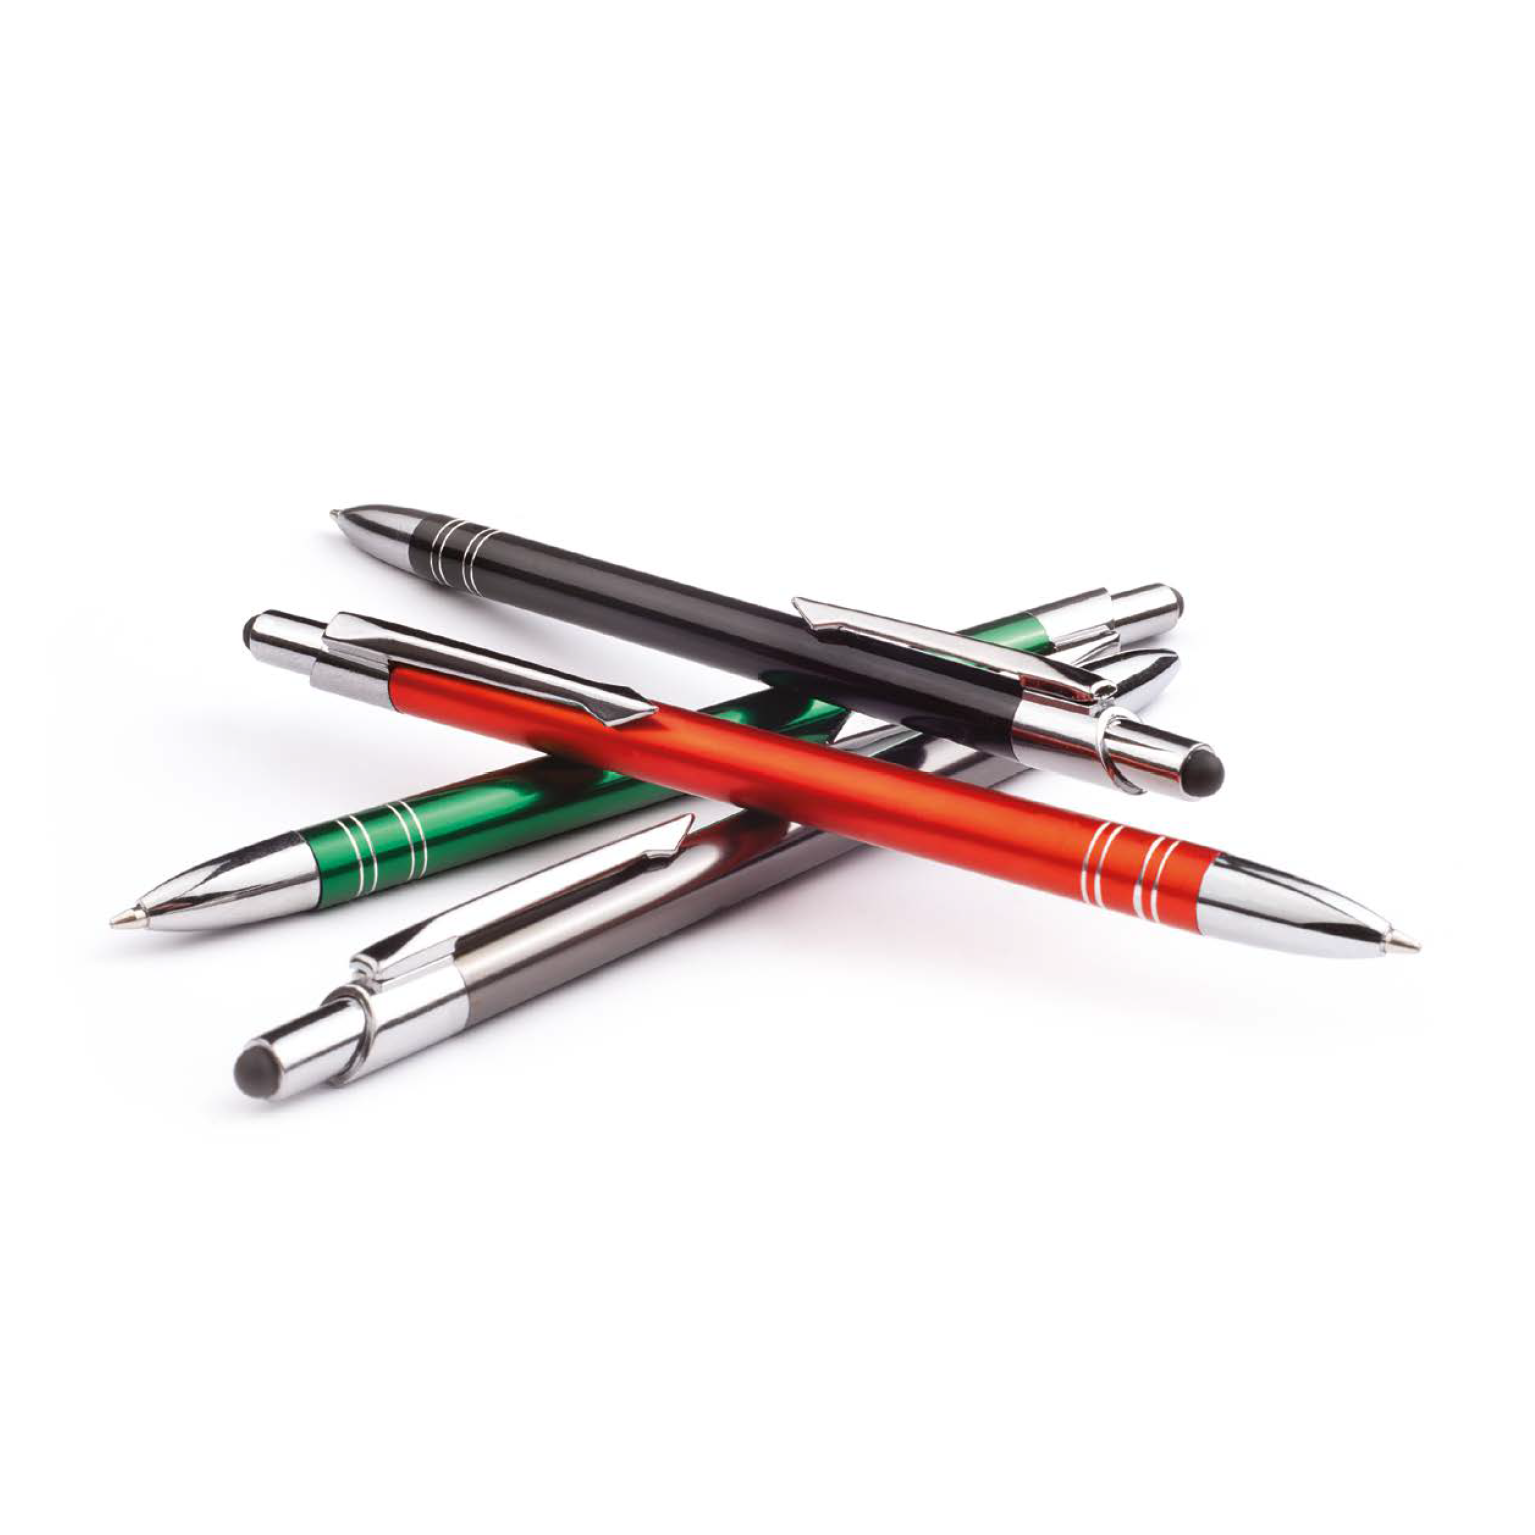 Długopis BOND TOUCH PEN (grawer w cenie) GR-BT-W